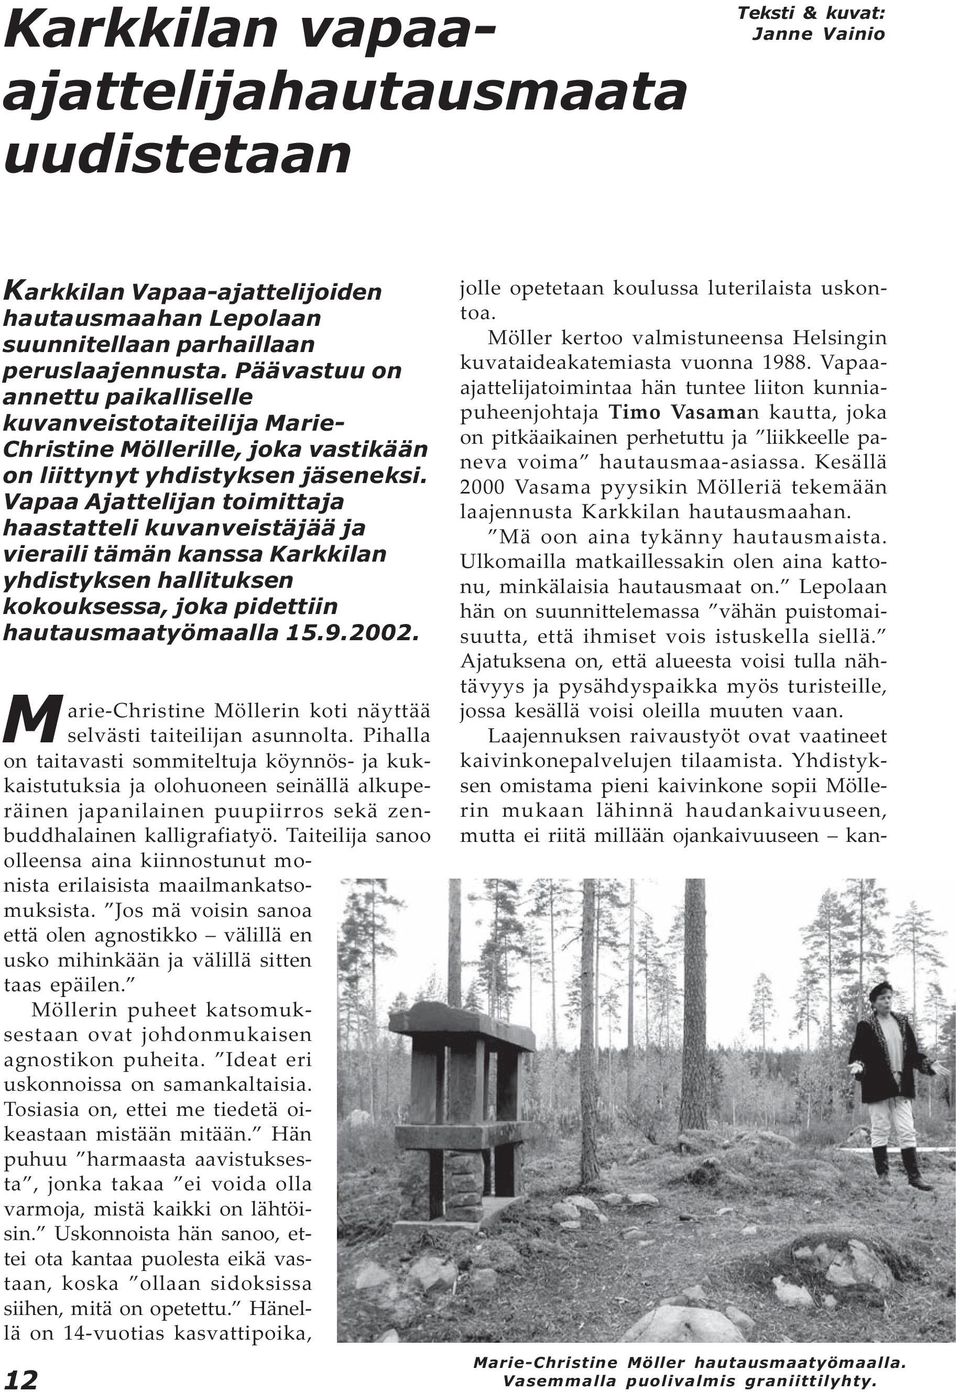 Vapaa Ajattelijan toimittaja haastatteli kuvanveistäjää ja vieraili tämän kanssa Karkkilan yhdistyksen hallituksen kokouksessa, joka pidettiin hautausmaatyömaalla 15.9.2002.